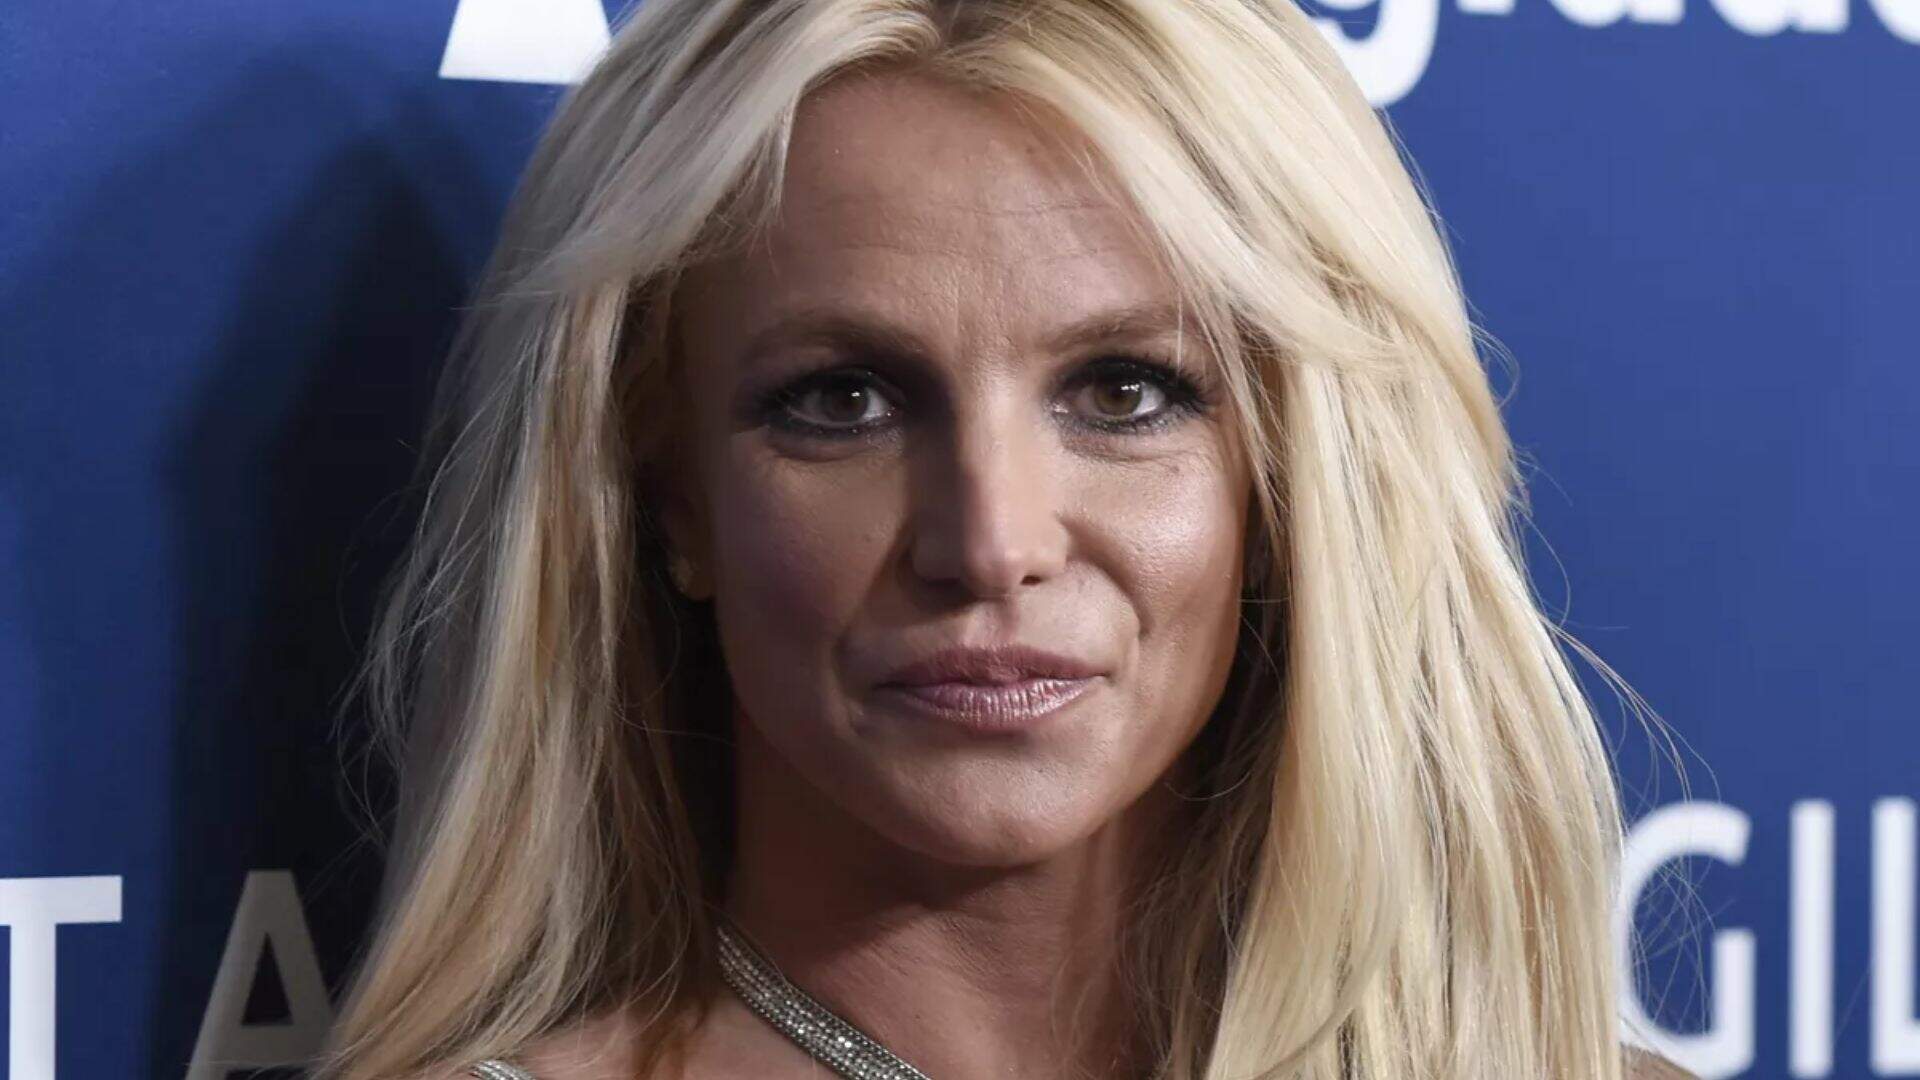 Britney Spears relembra piores momentos com o pai e faz revelação inédita: “Queime no inferno” - Metropolitana FM